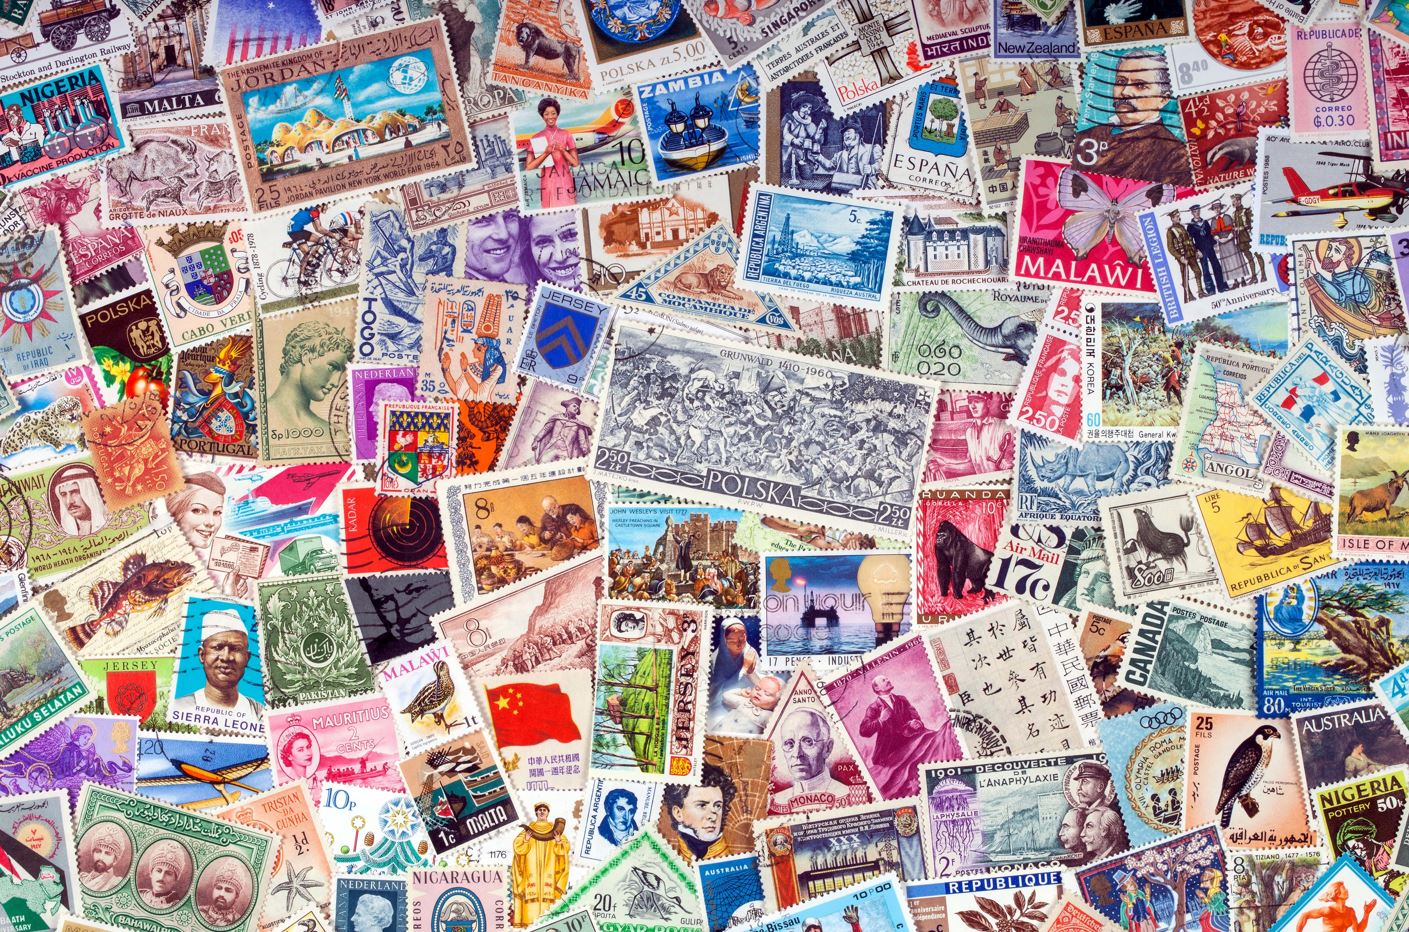 Sellos postales: ¿cómo surgieron y por qué se coleccionan?